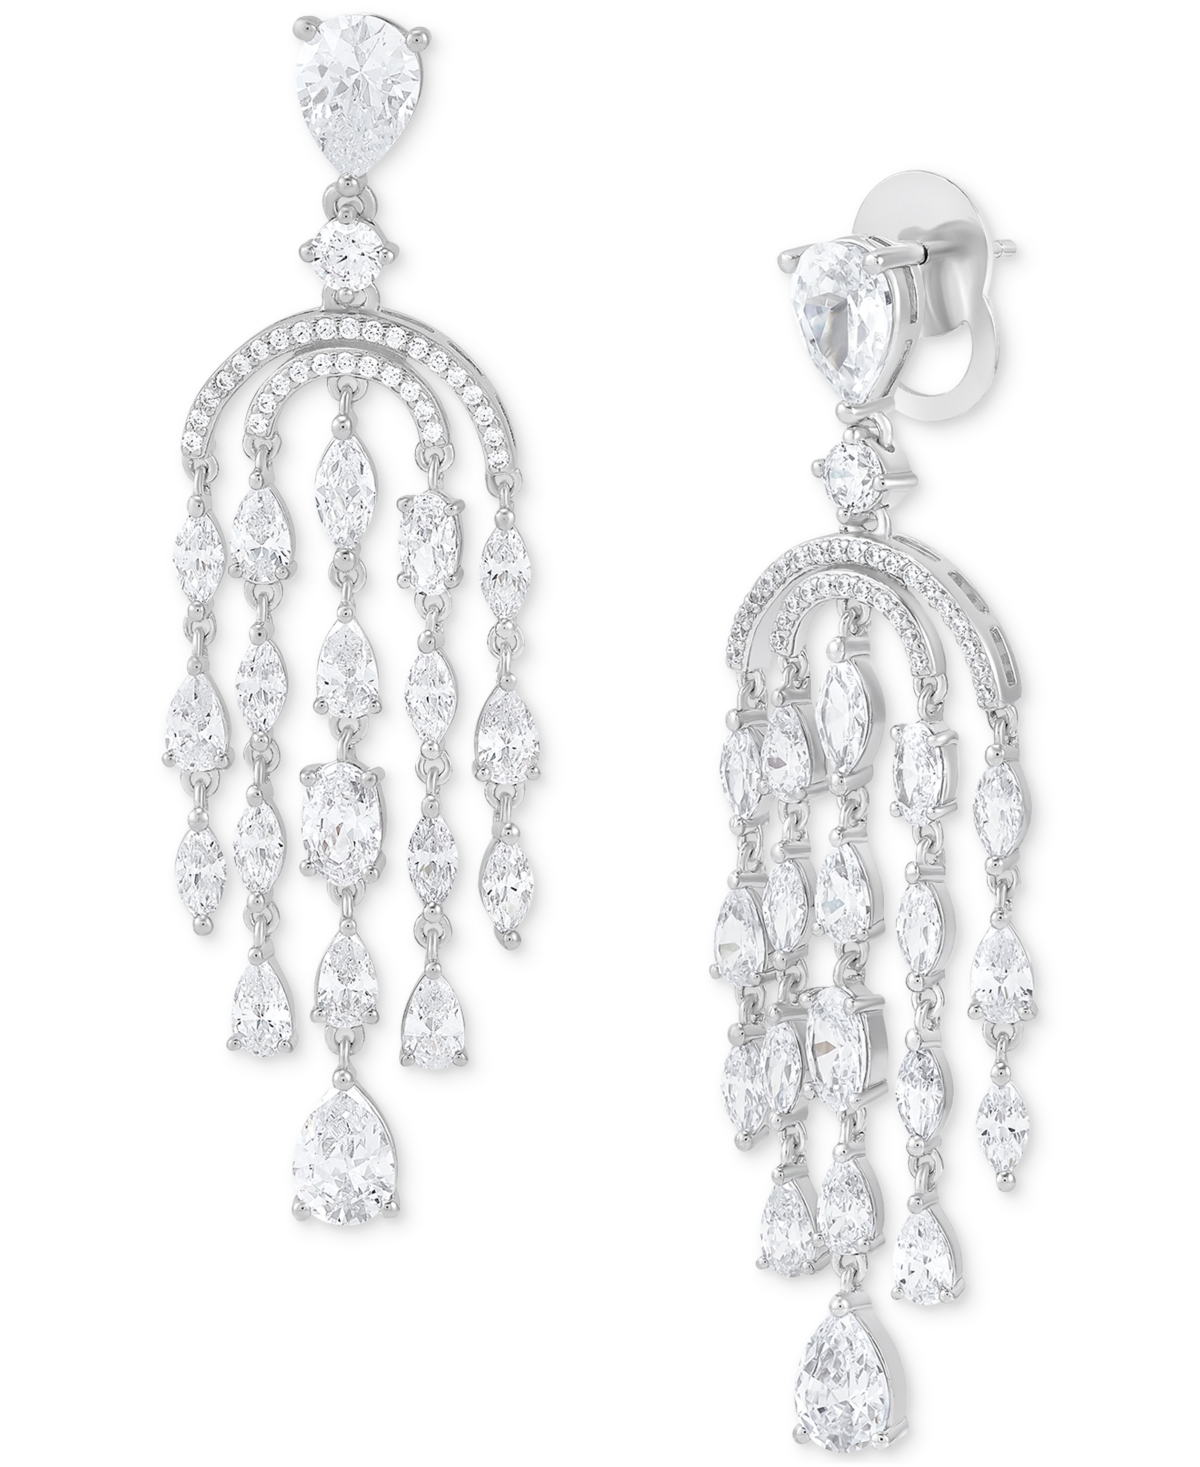 Cubic Zirconia Chandelier Drop Earrings in Sterling Silver - Sterling Silver